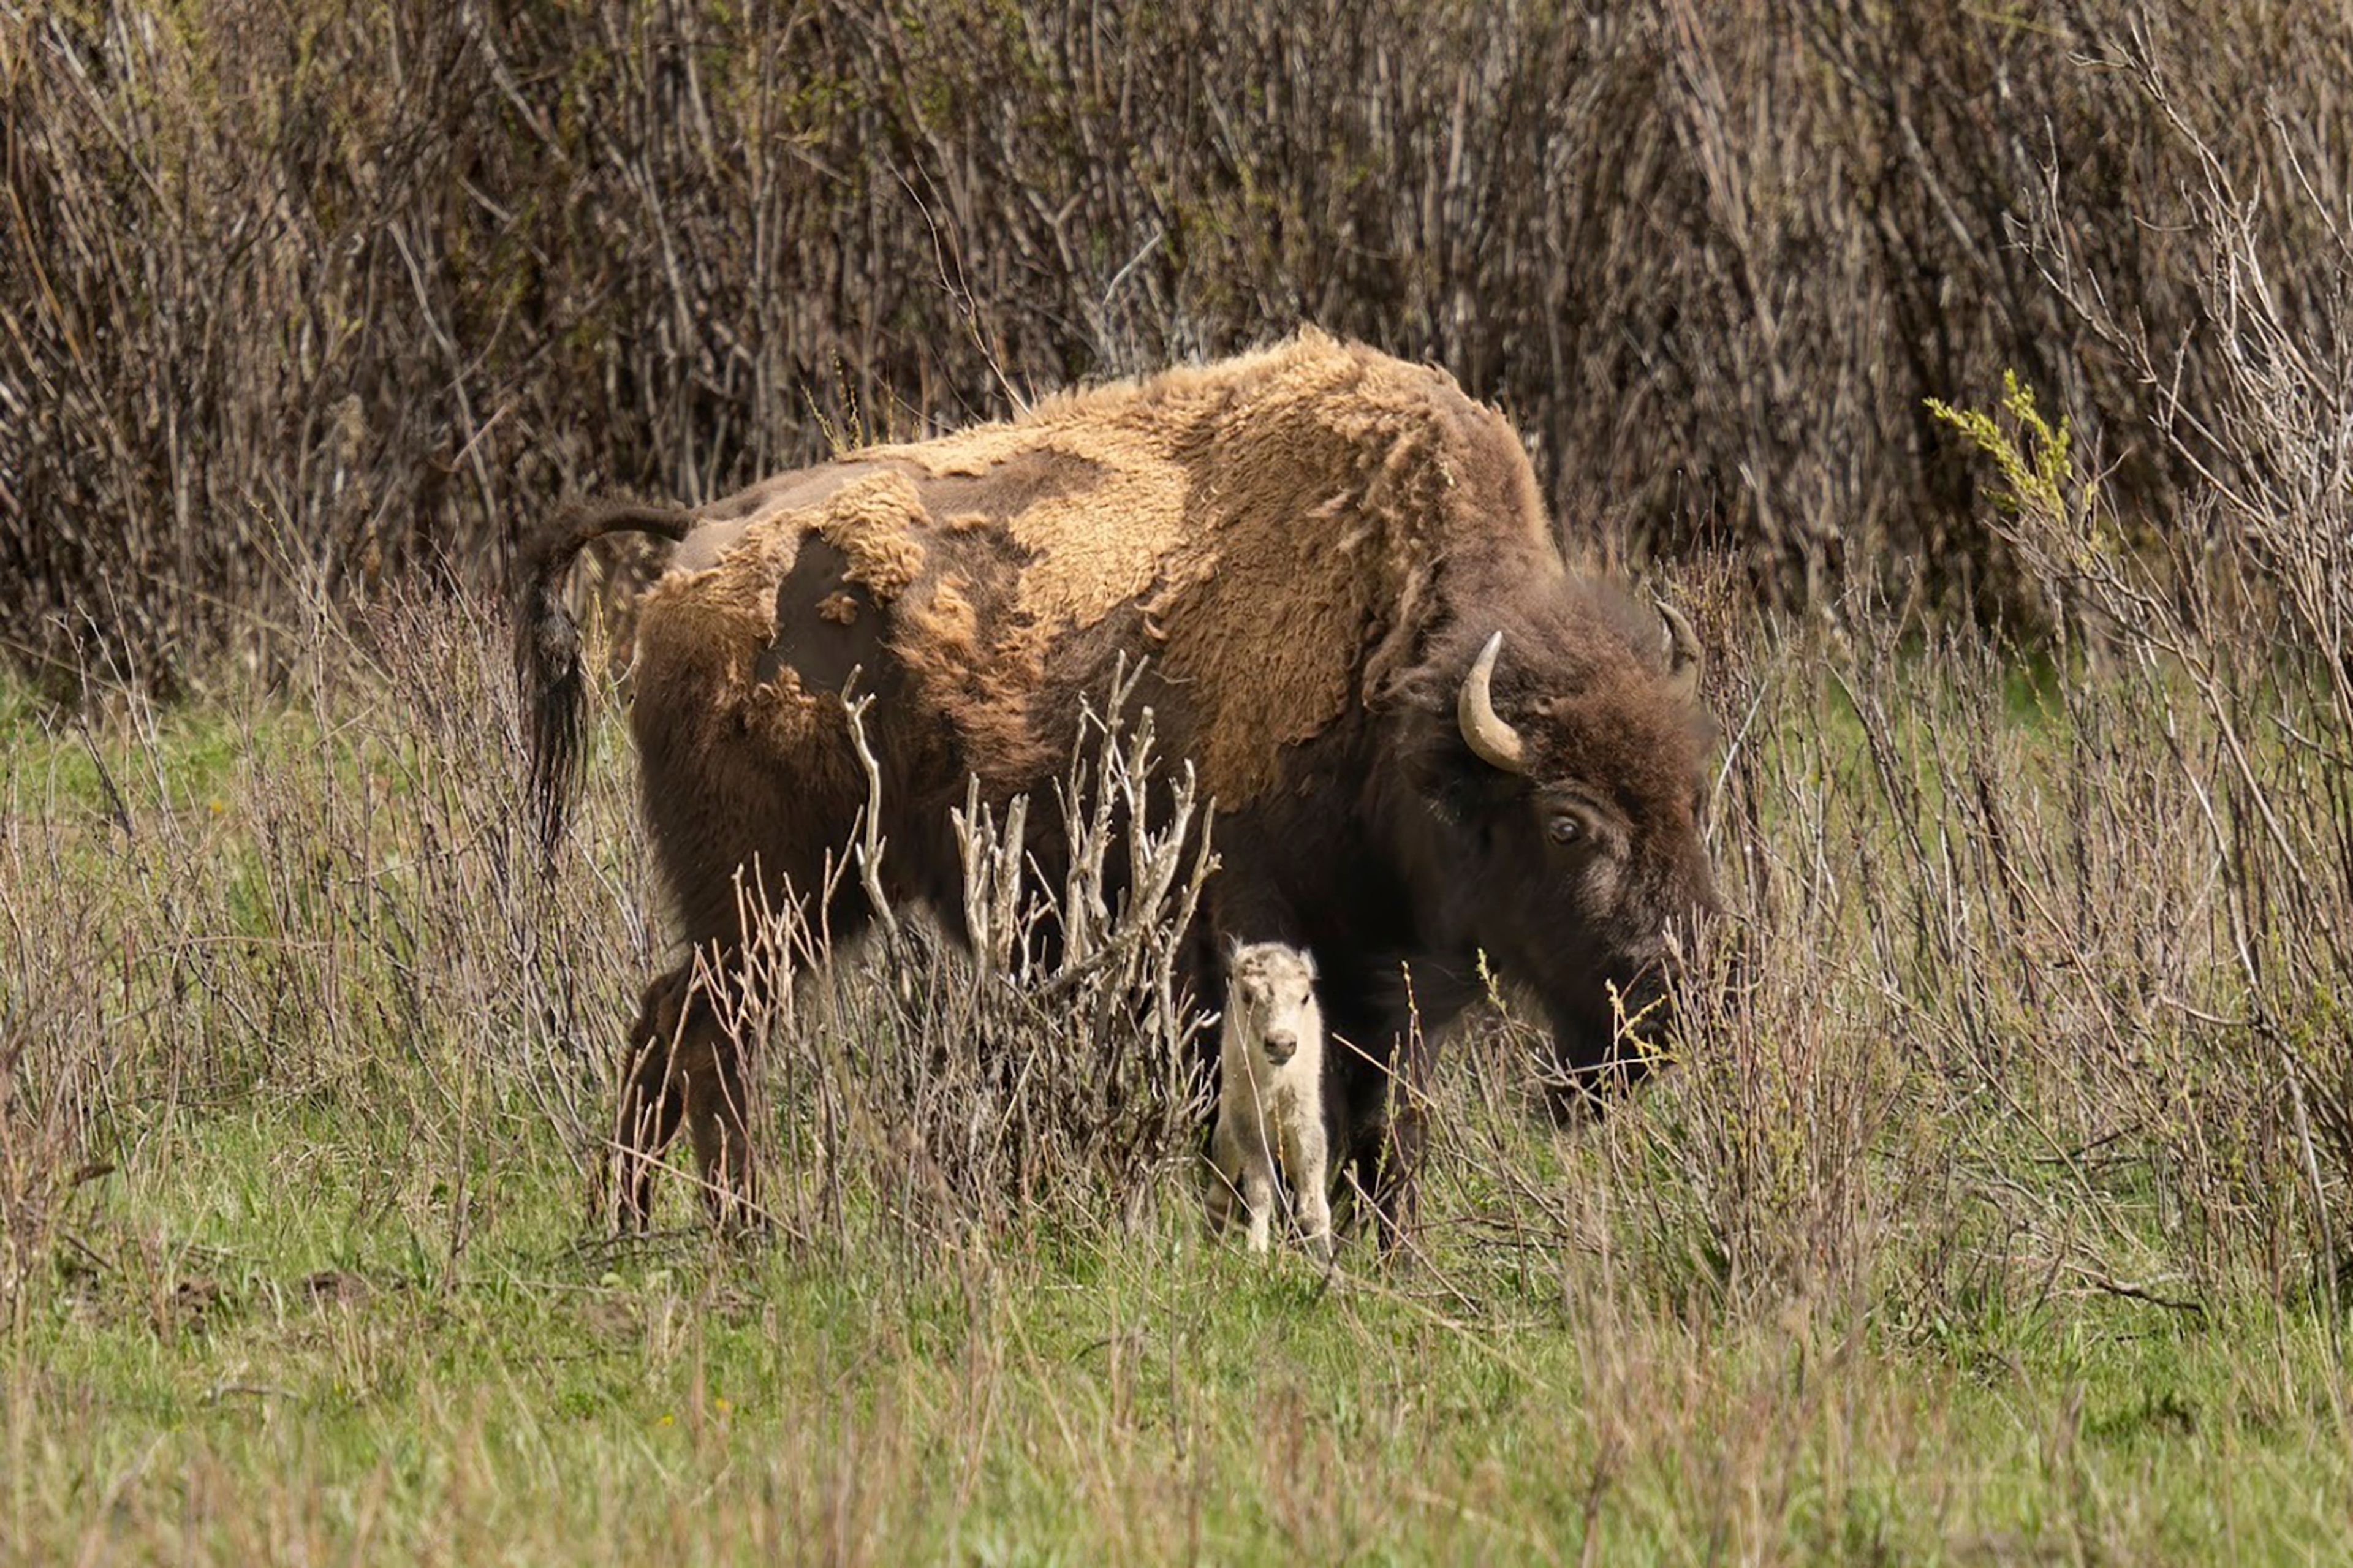 Native American ceremony will celebrate birth of white buffalo calf in Yellowstone park